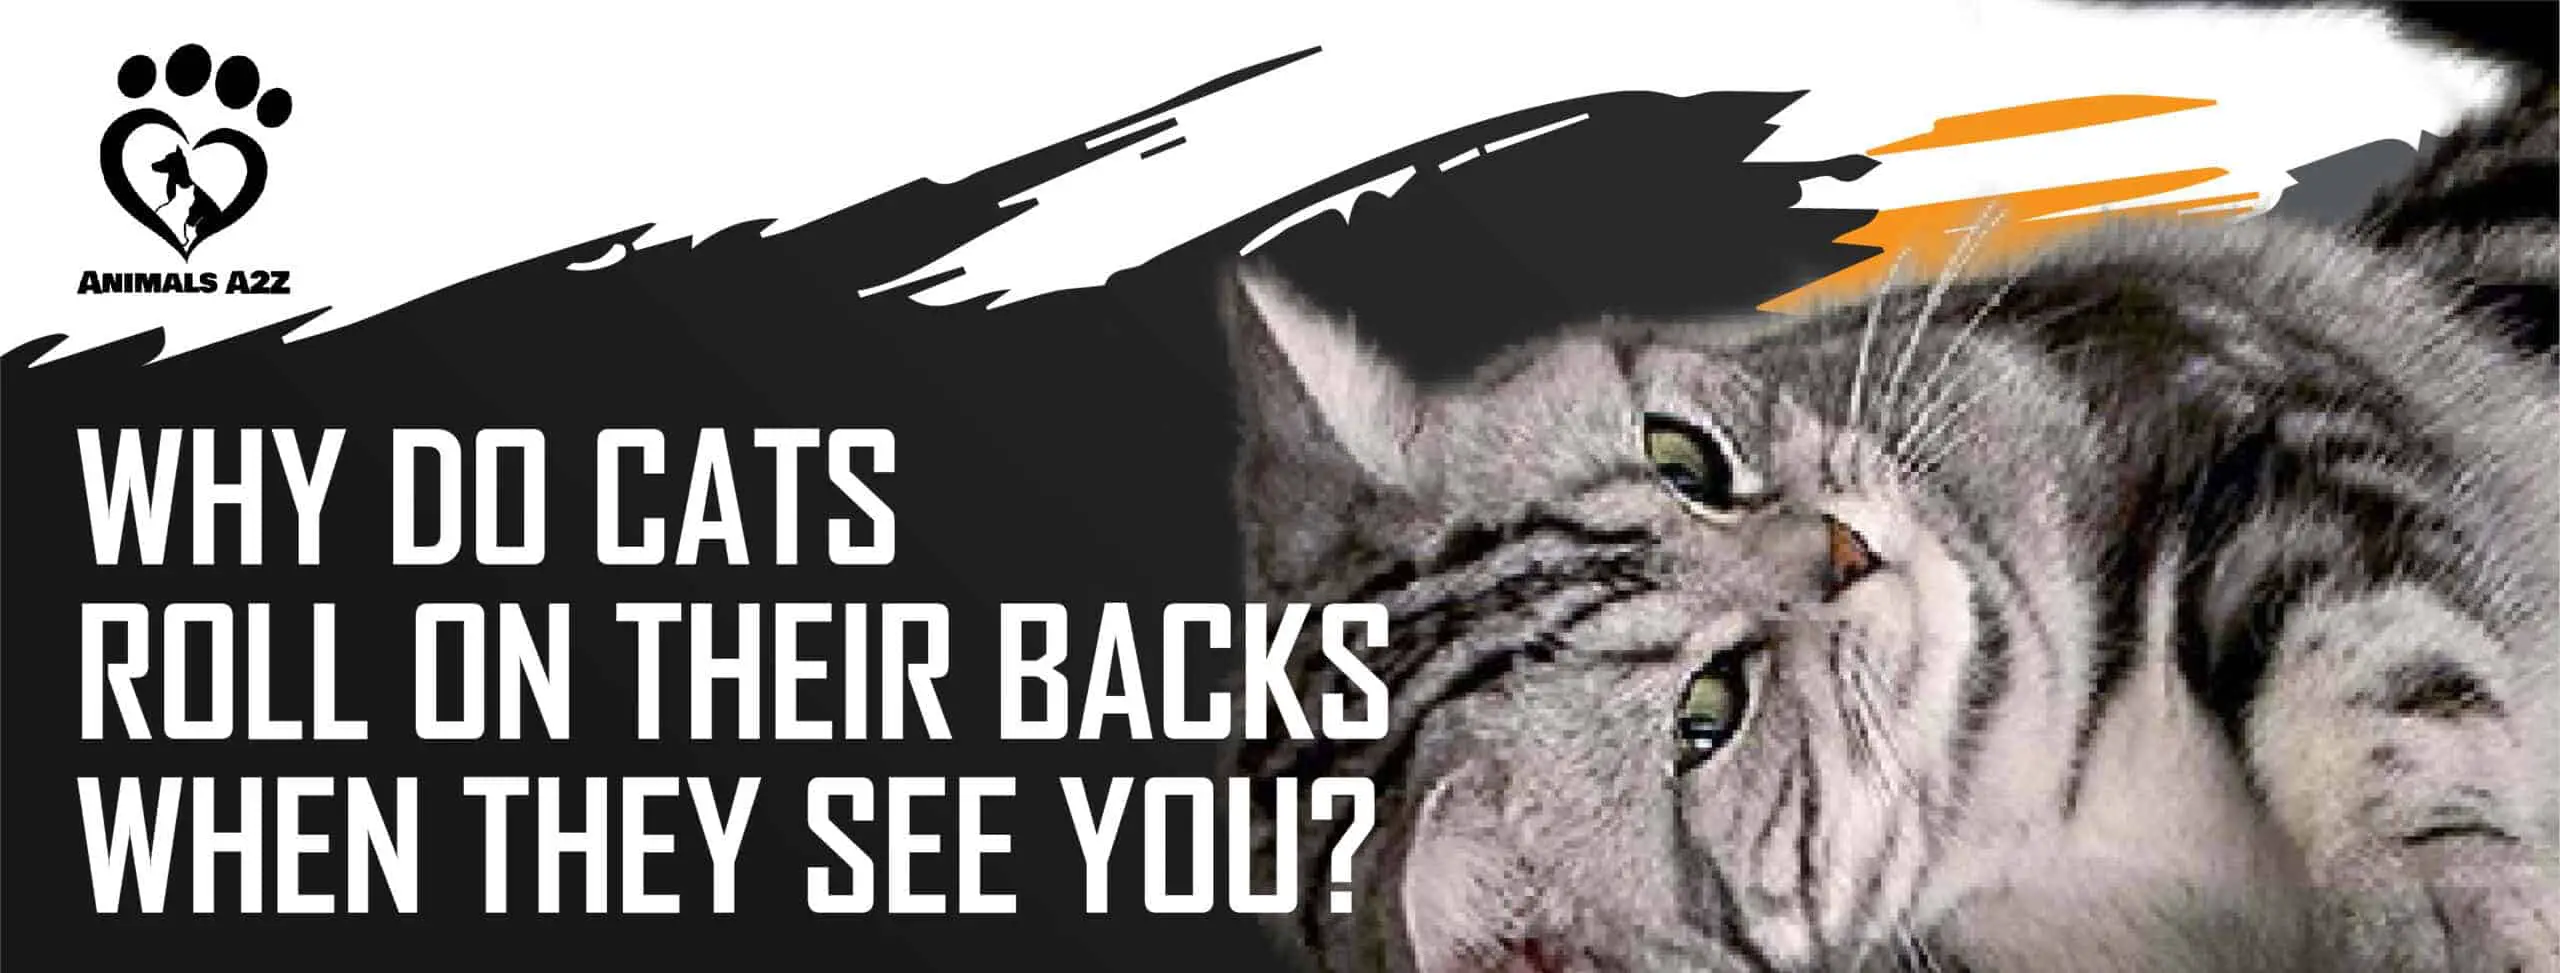 Hvorfor ruller katte sig på ryggen, når de ser dig